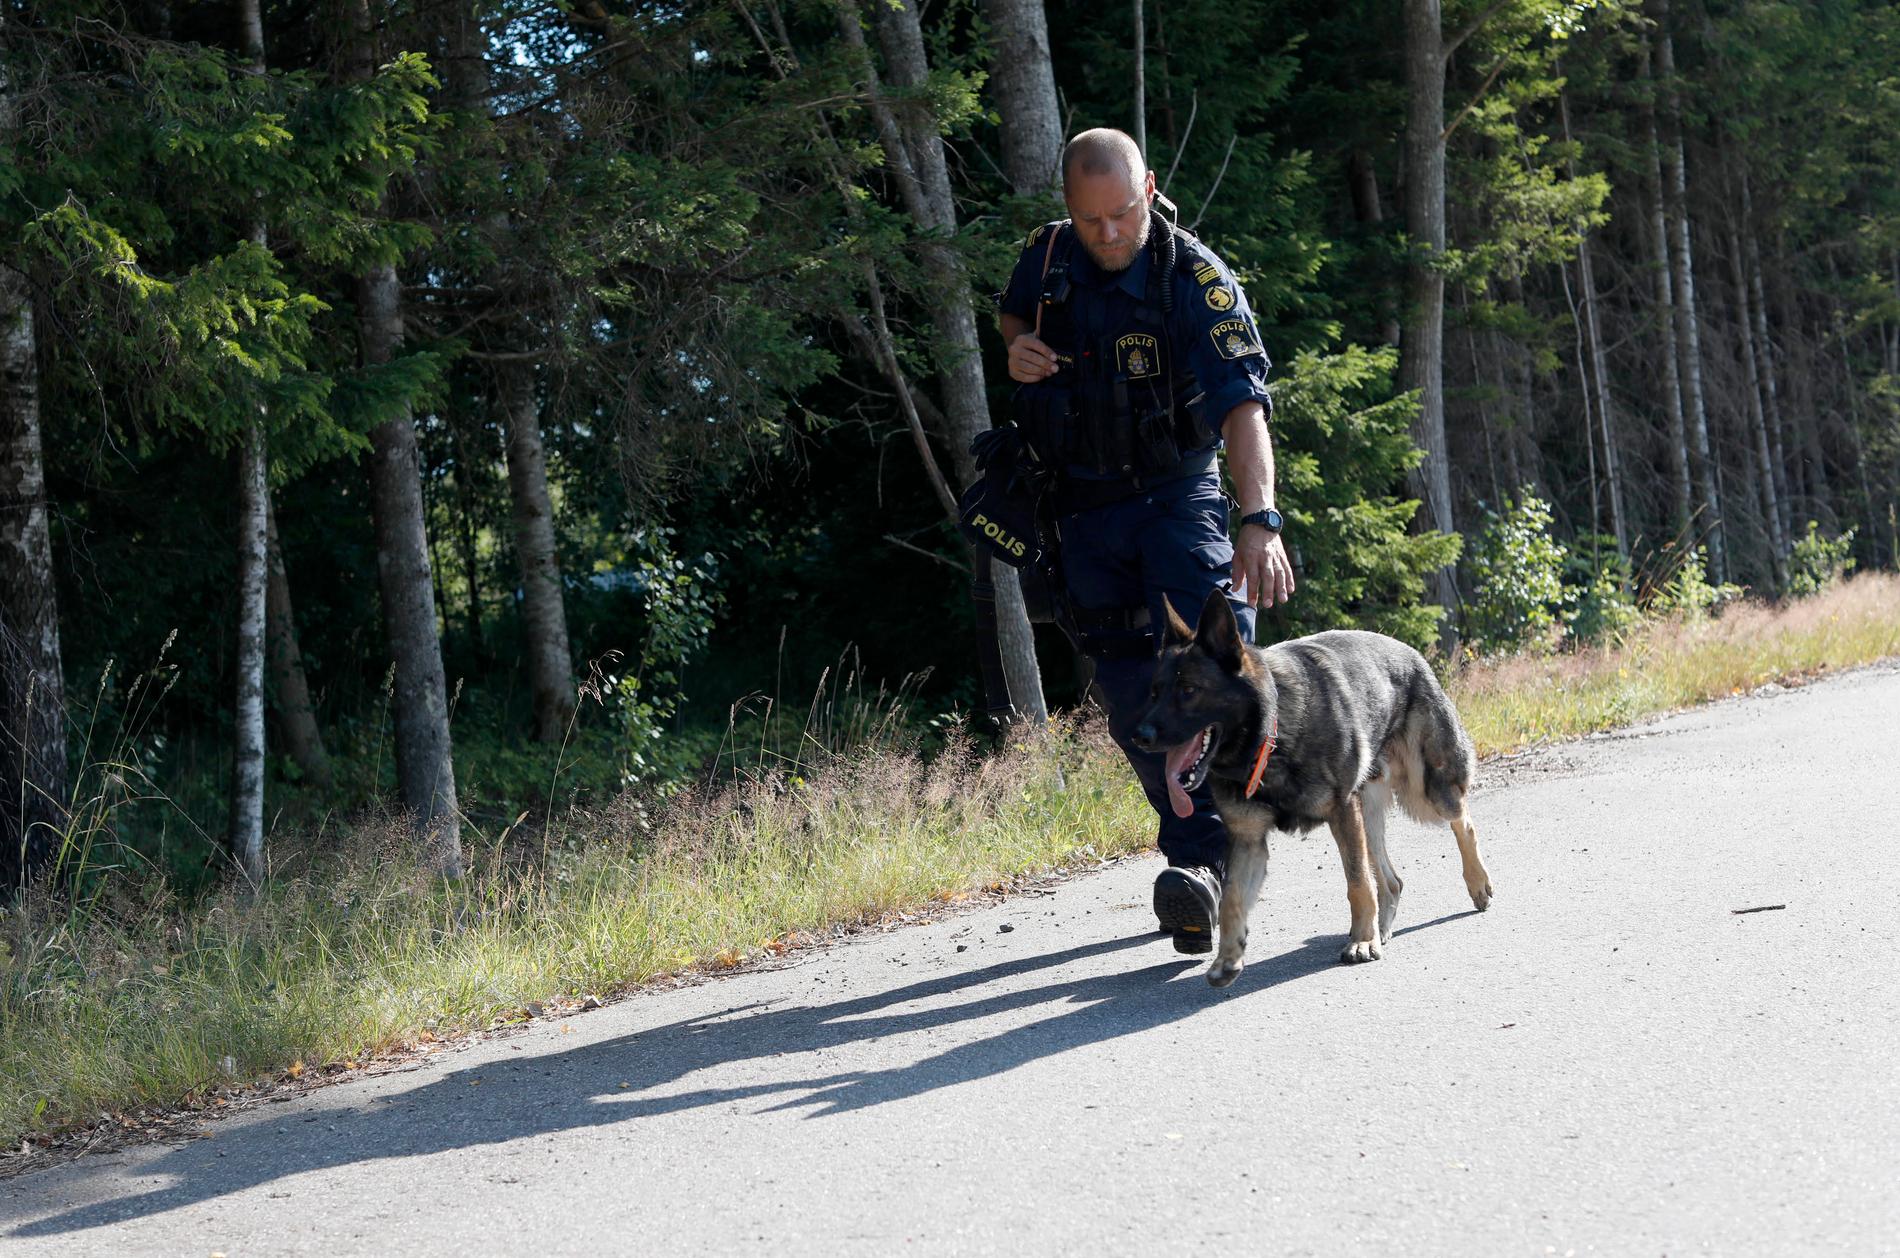 Polisinsatsen efter rymningen från Kriminalvårdens transport i Laxå.